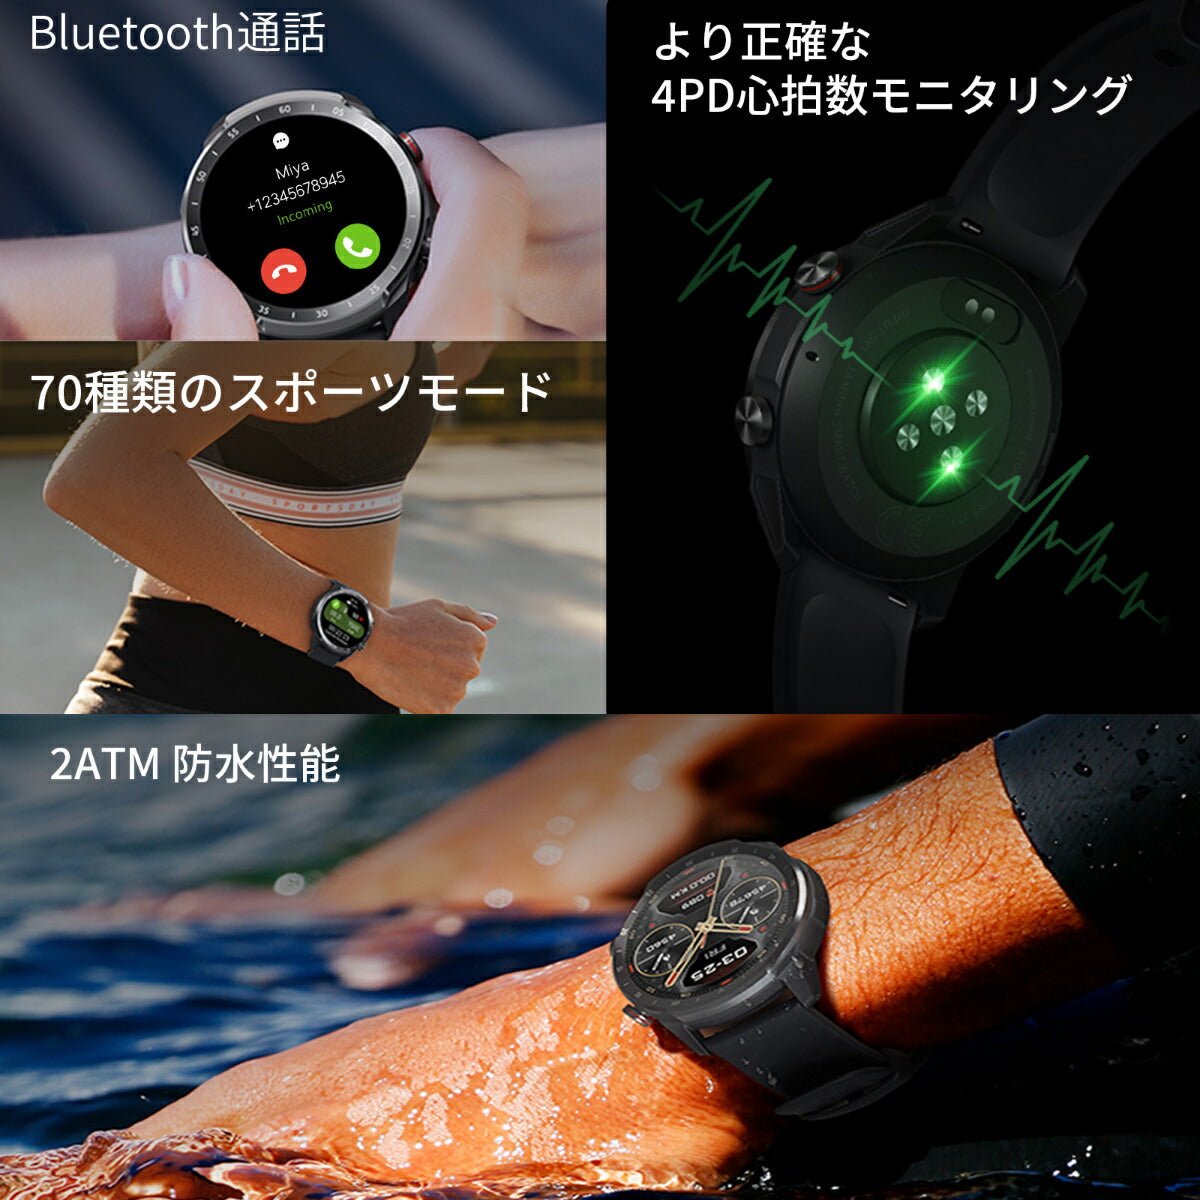 ミブロ Mibro スマートウォッチ Mibro Watch A2 SP380007-C01 腕時計 メンズ レディース